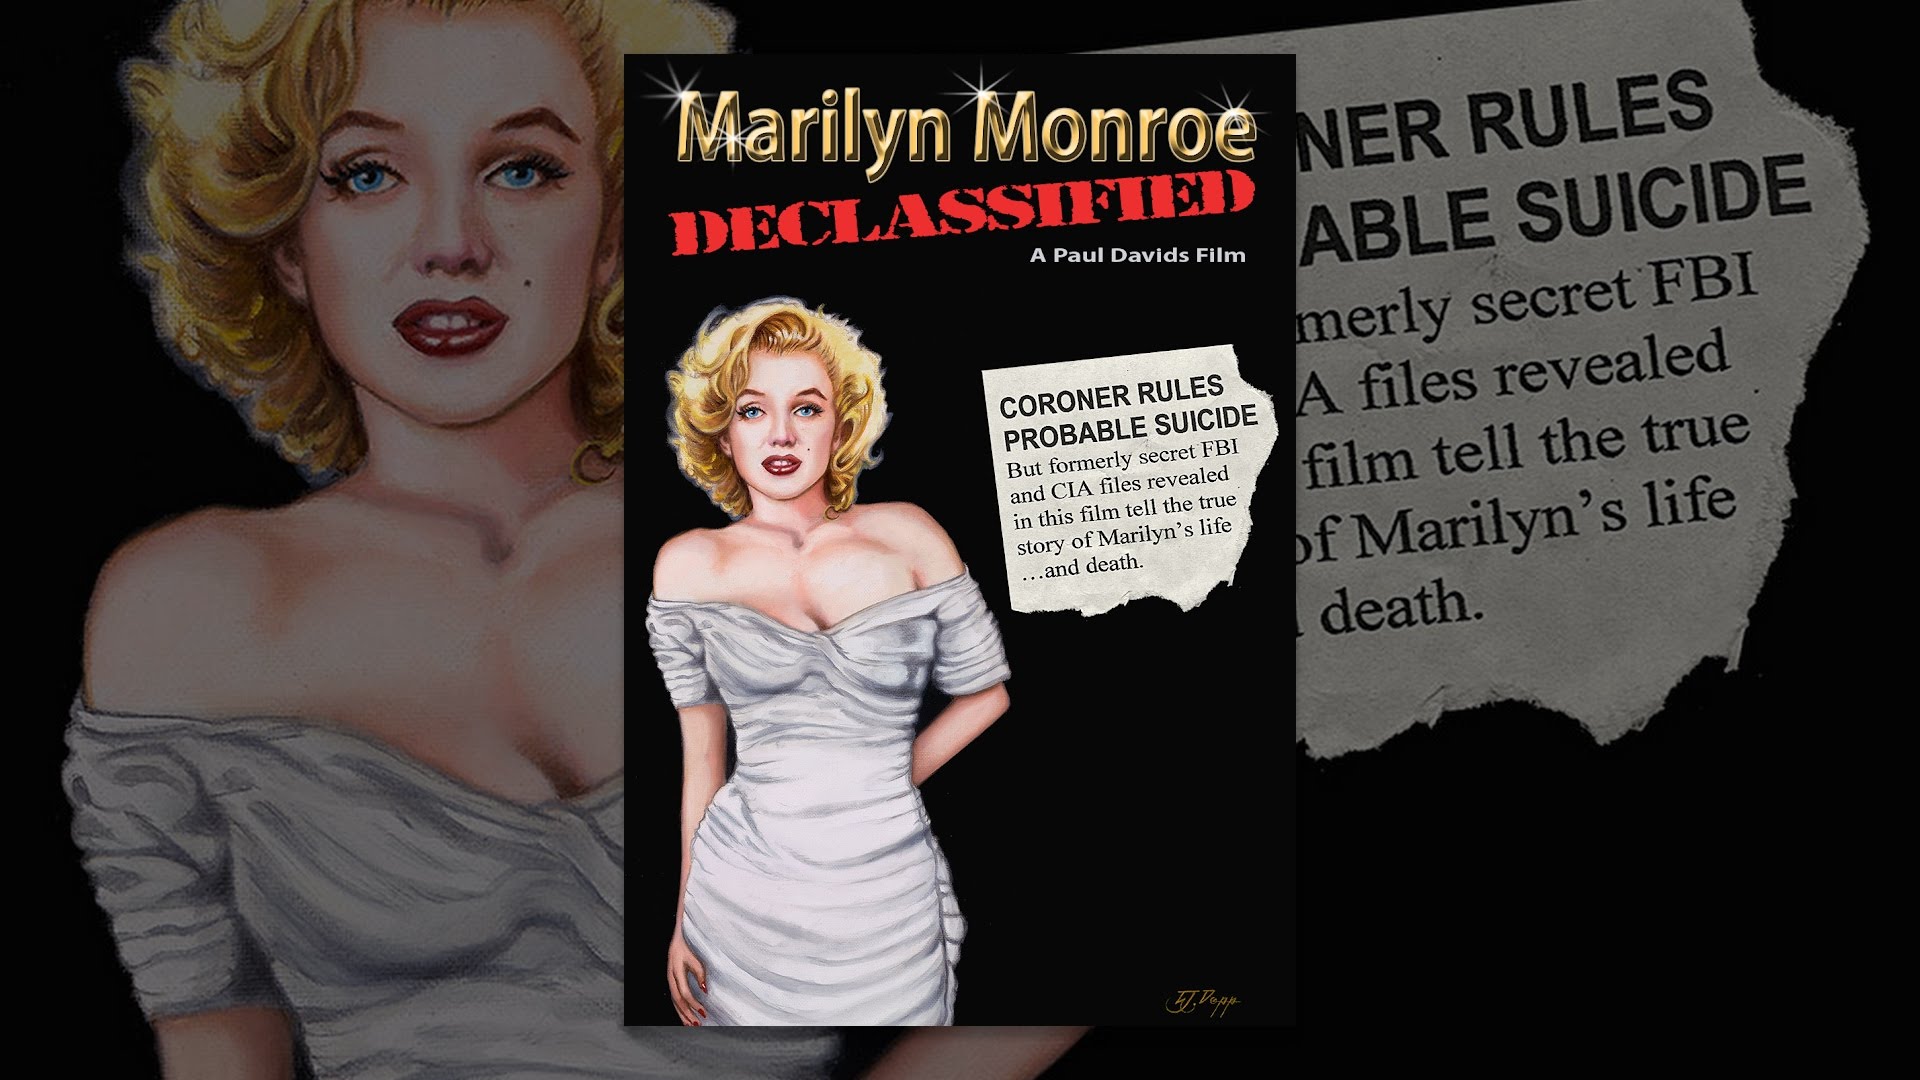 Marilyn Monroe Declassified